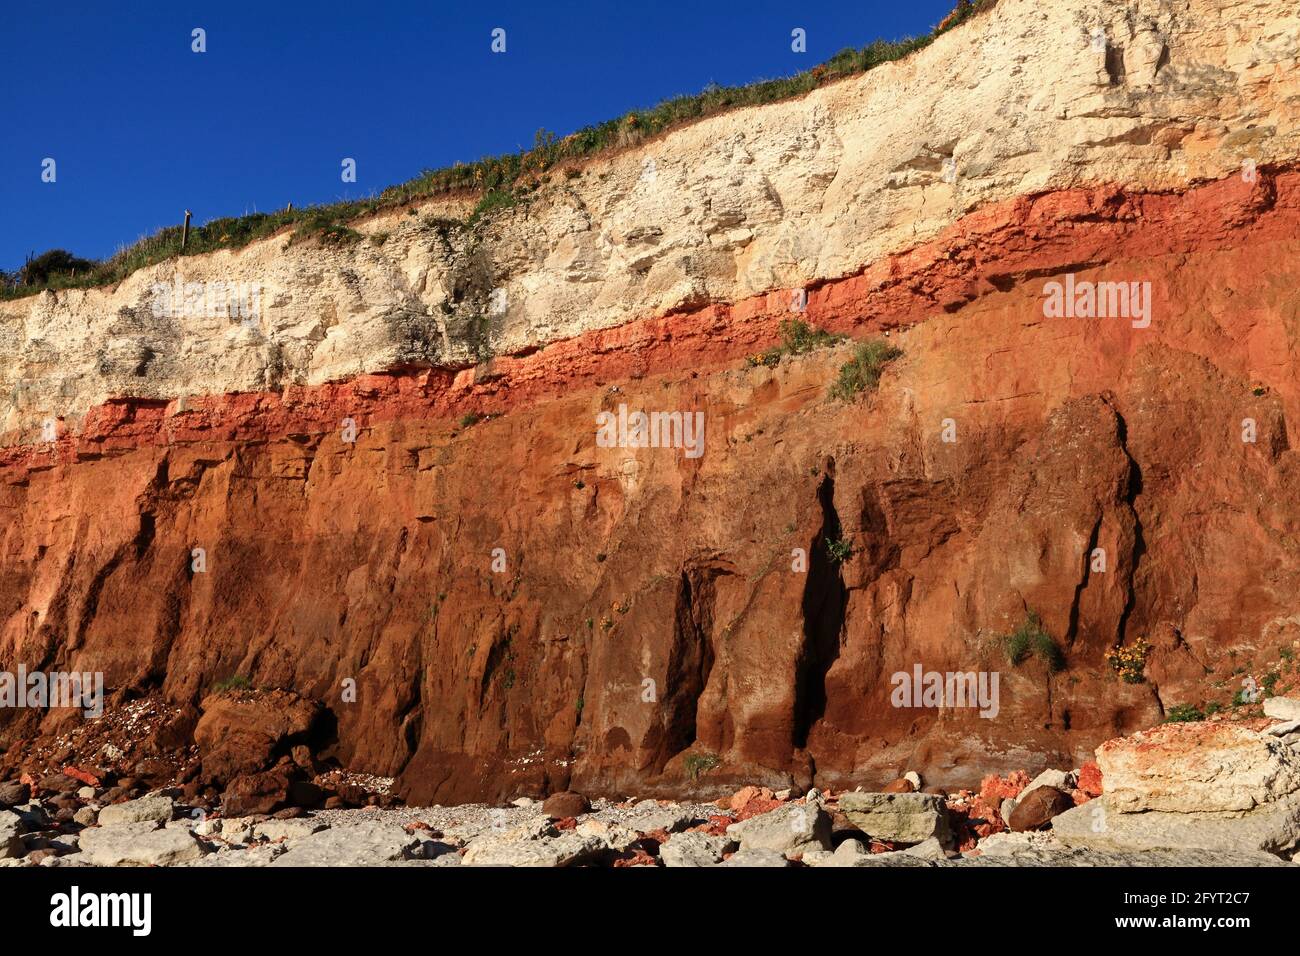 Géologie, Crétacé, sédimentaire, roche, formation, Hunstanton Cliffs, Norfolk, Angleterre, Royaume-Uni 3 Banque D'Images